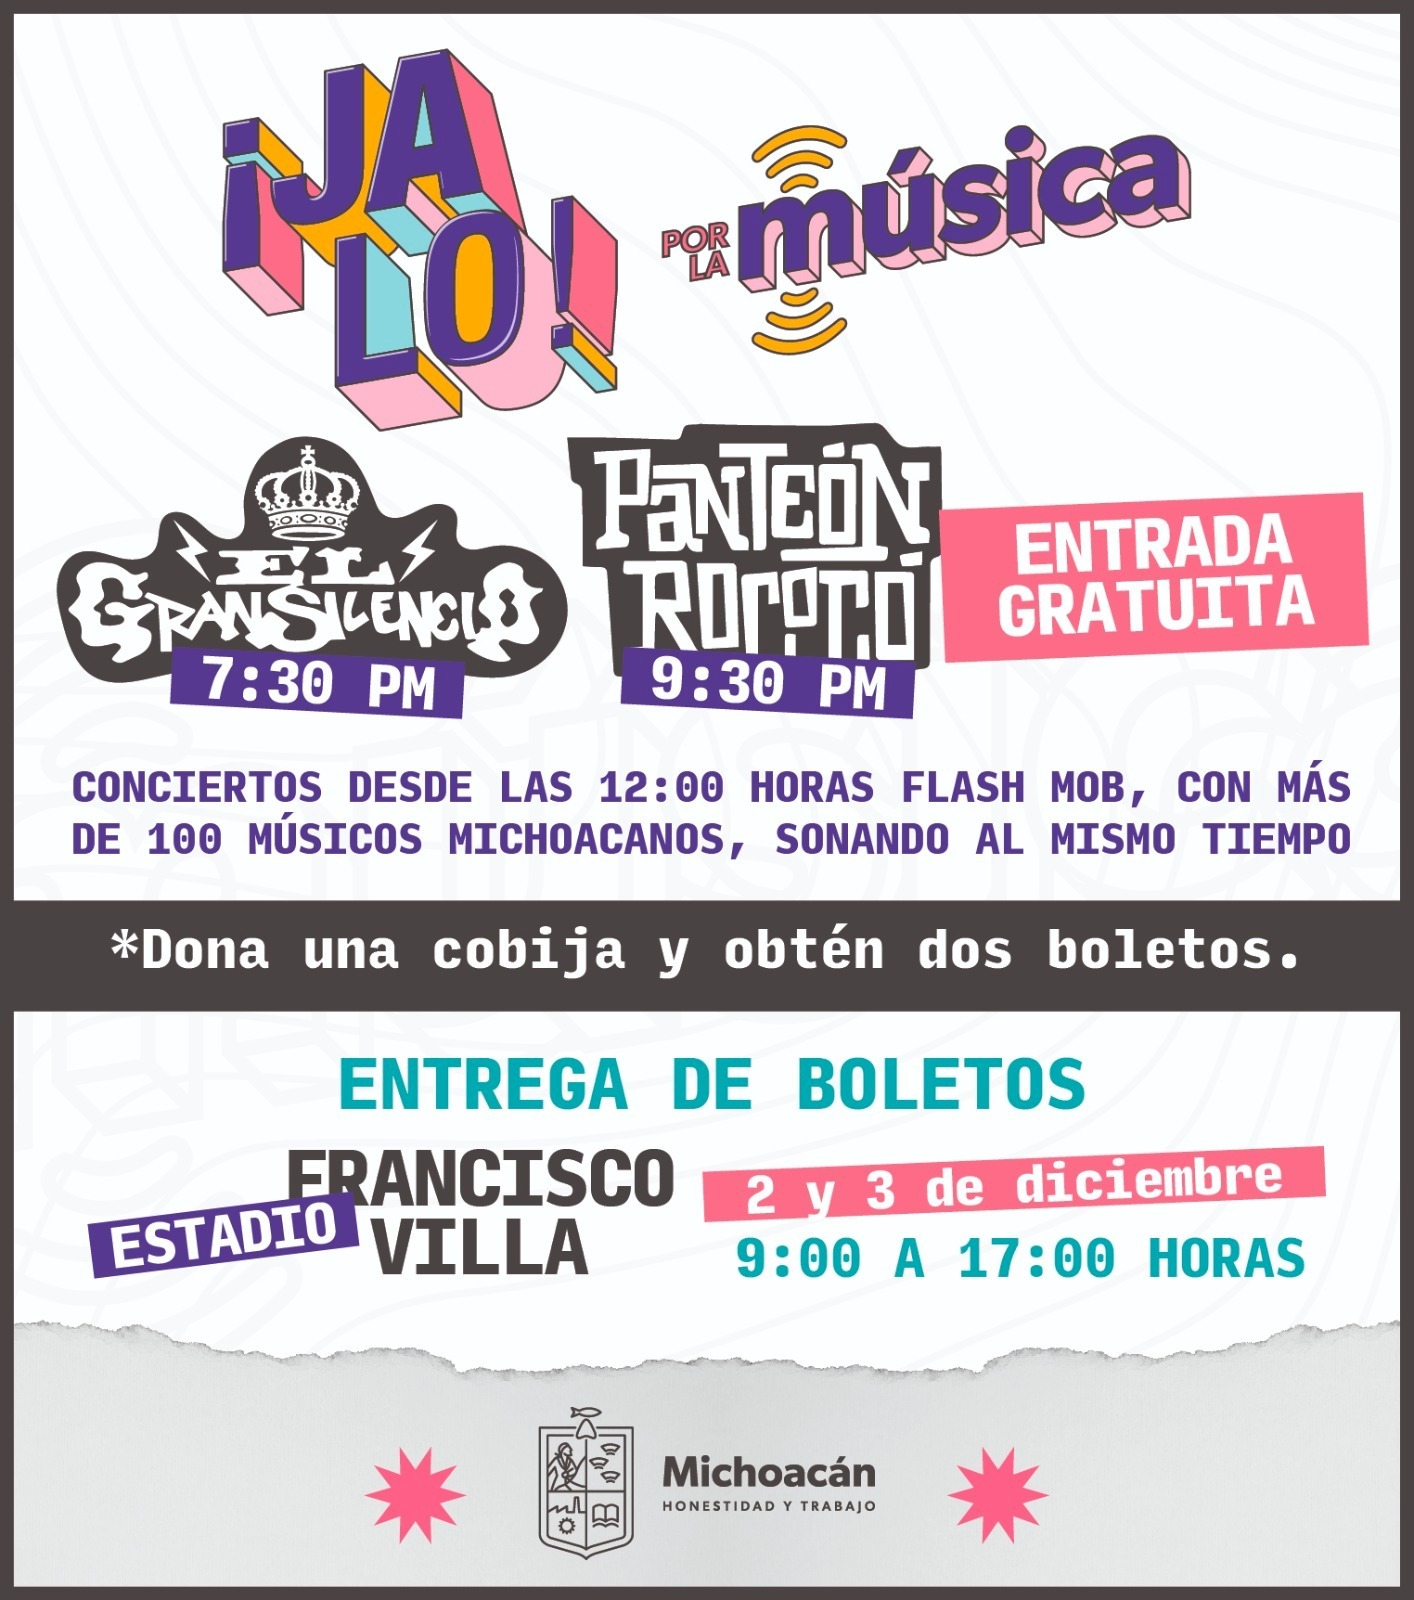 Calentarán 18 bandas michoacanas el concierto de Panteón Rococó y El Gran Silencio